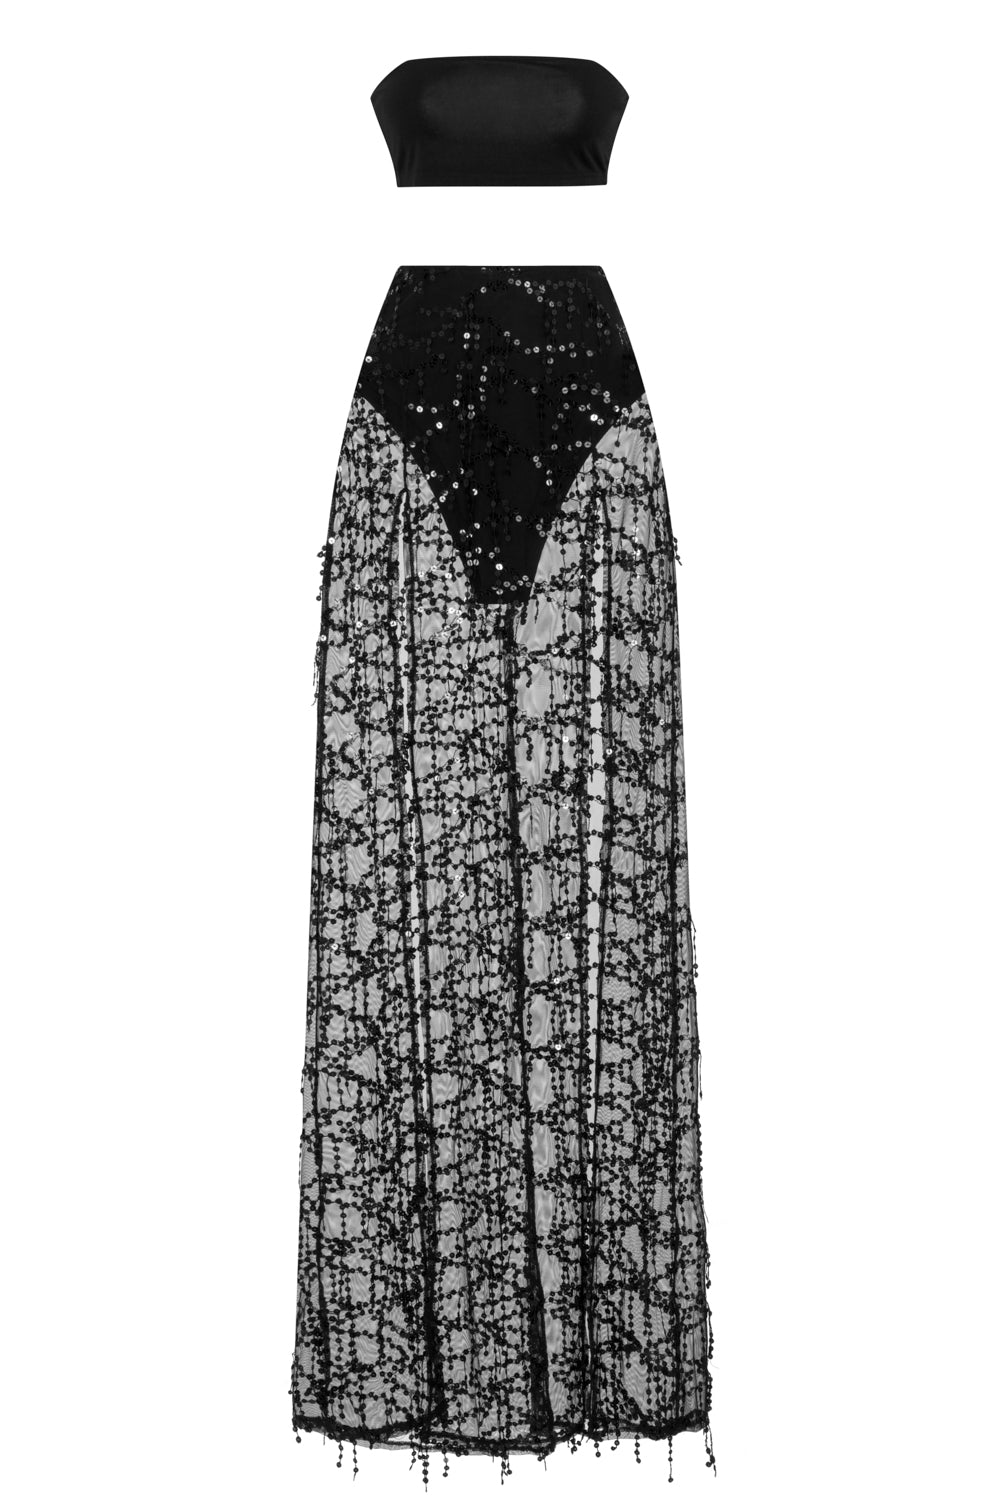 Latina Black Sheer Sequin Tassel Double Slit Skirt Co Ord Set